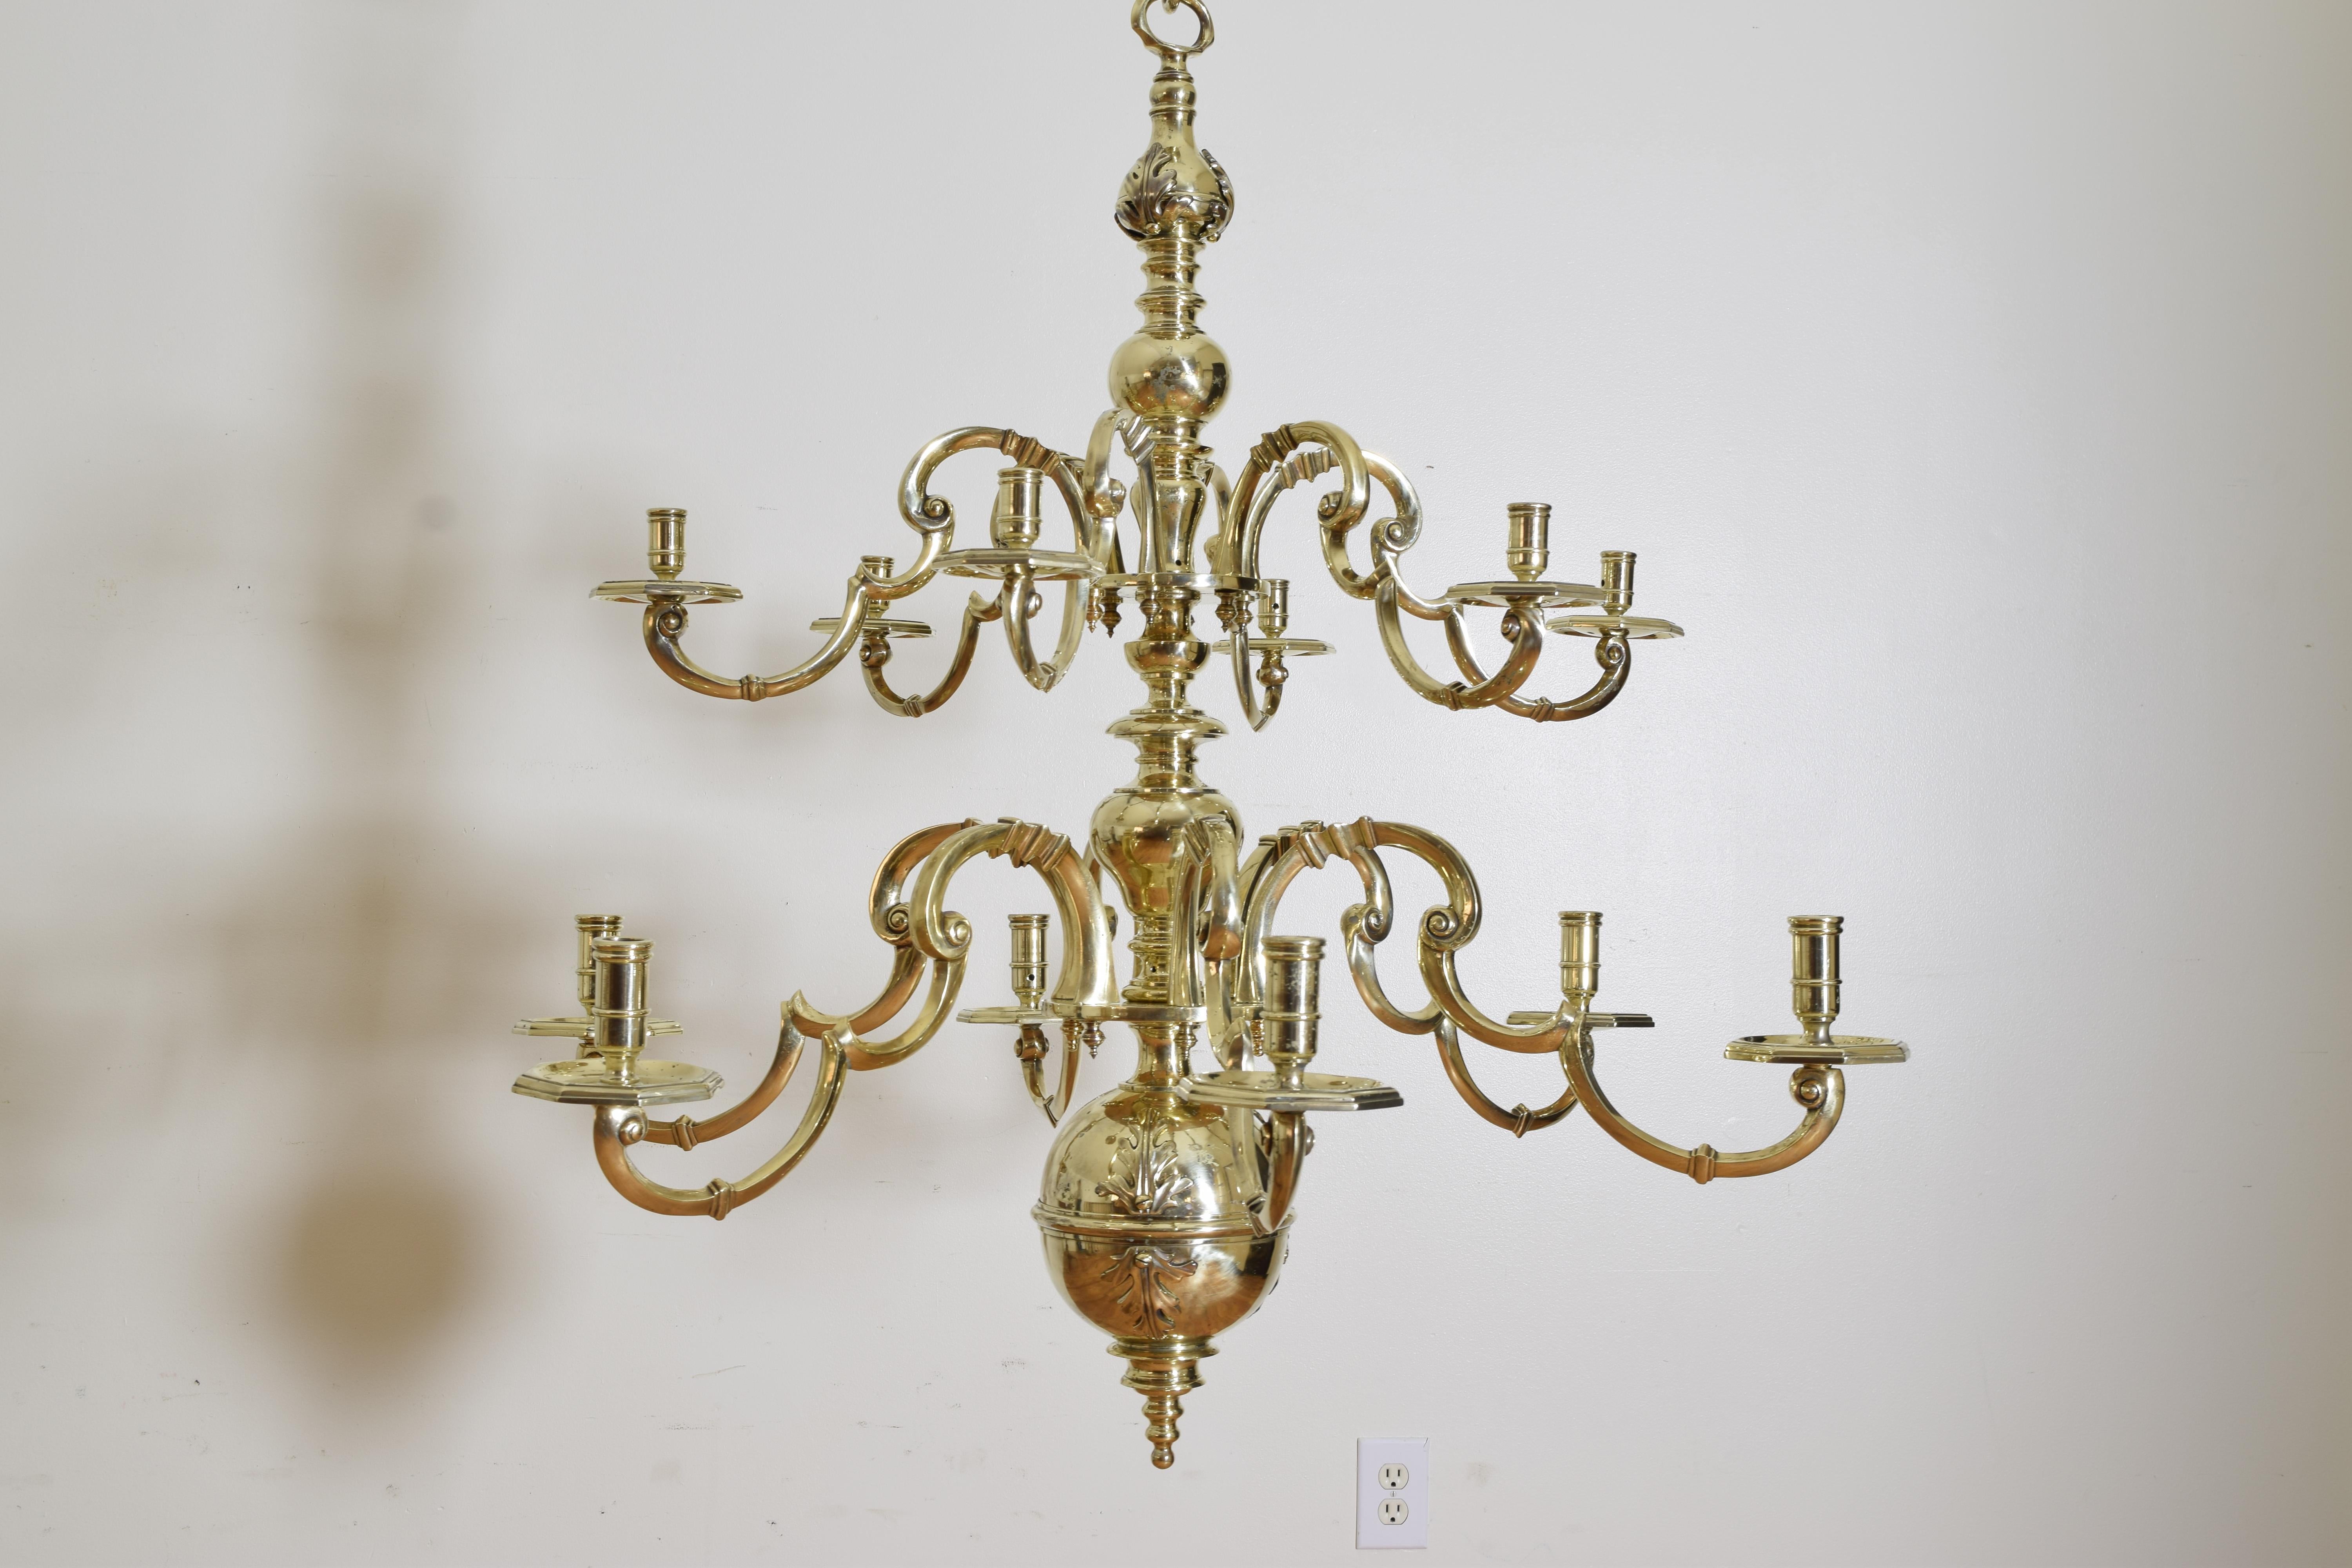 Laiton Exceptionnel lustre de style baroque néerlandais à 2 étages et 12 lumières en laiton, 3rdq 19ème siècle